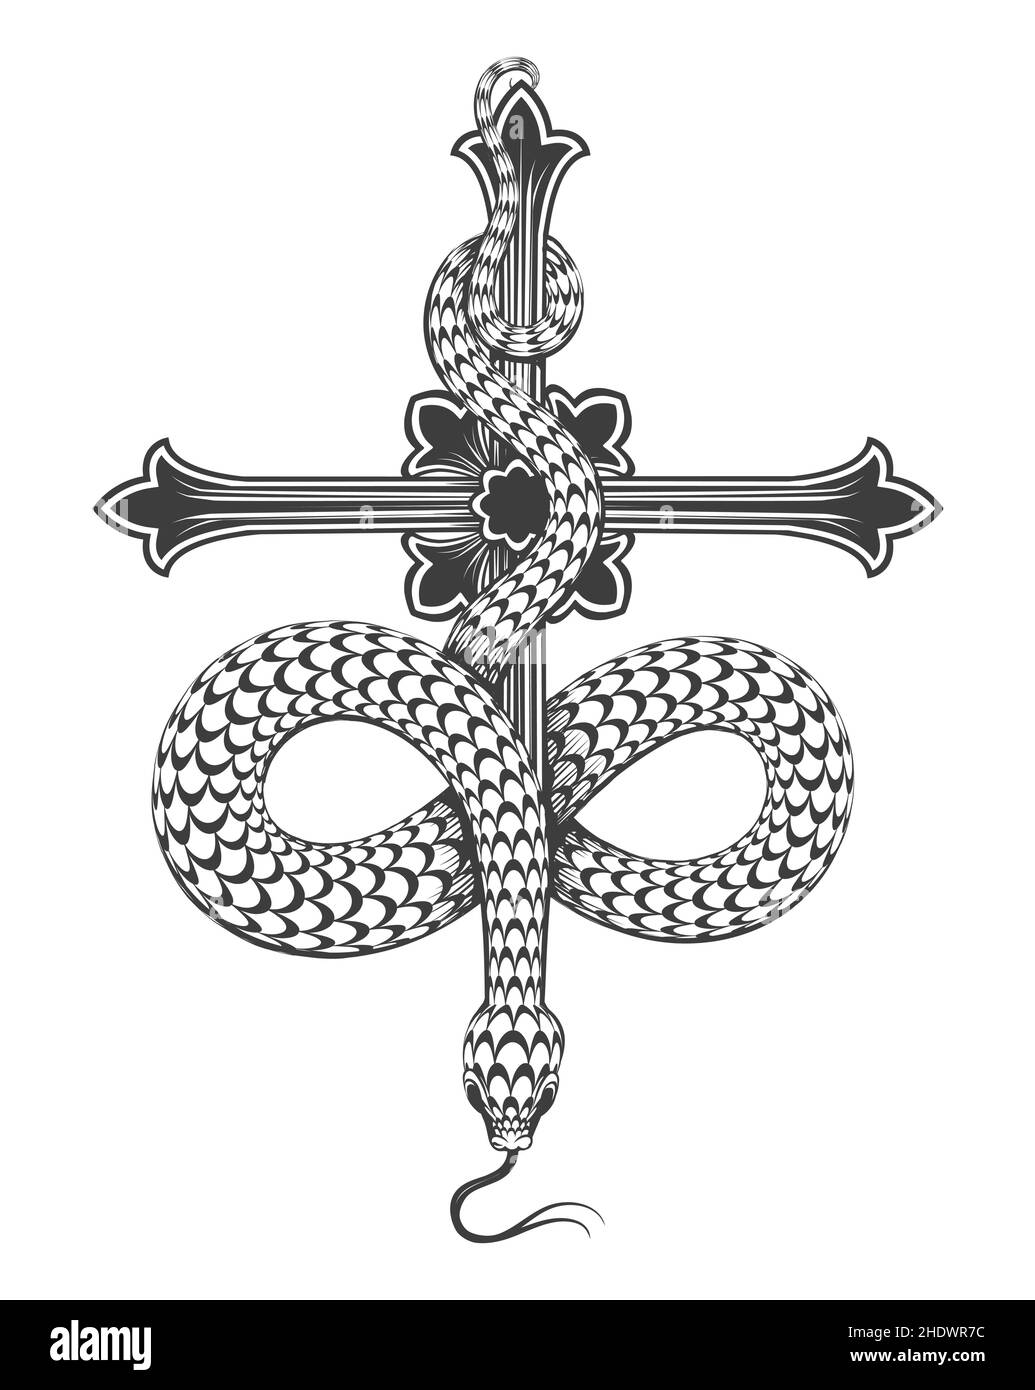 Black and Wite Tattoo von Schlange auf einem Kreuz isoliert auf weiß. Vektorgrafik. Stock Vektor